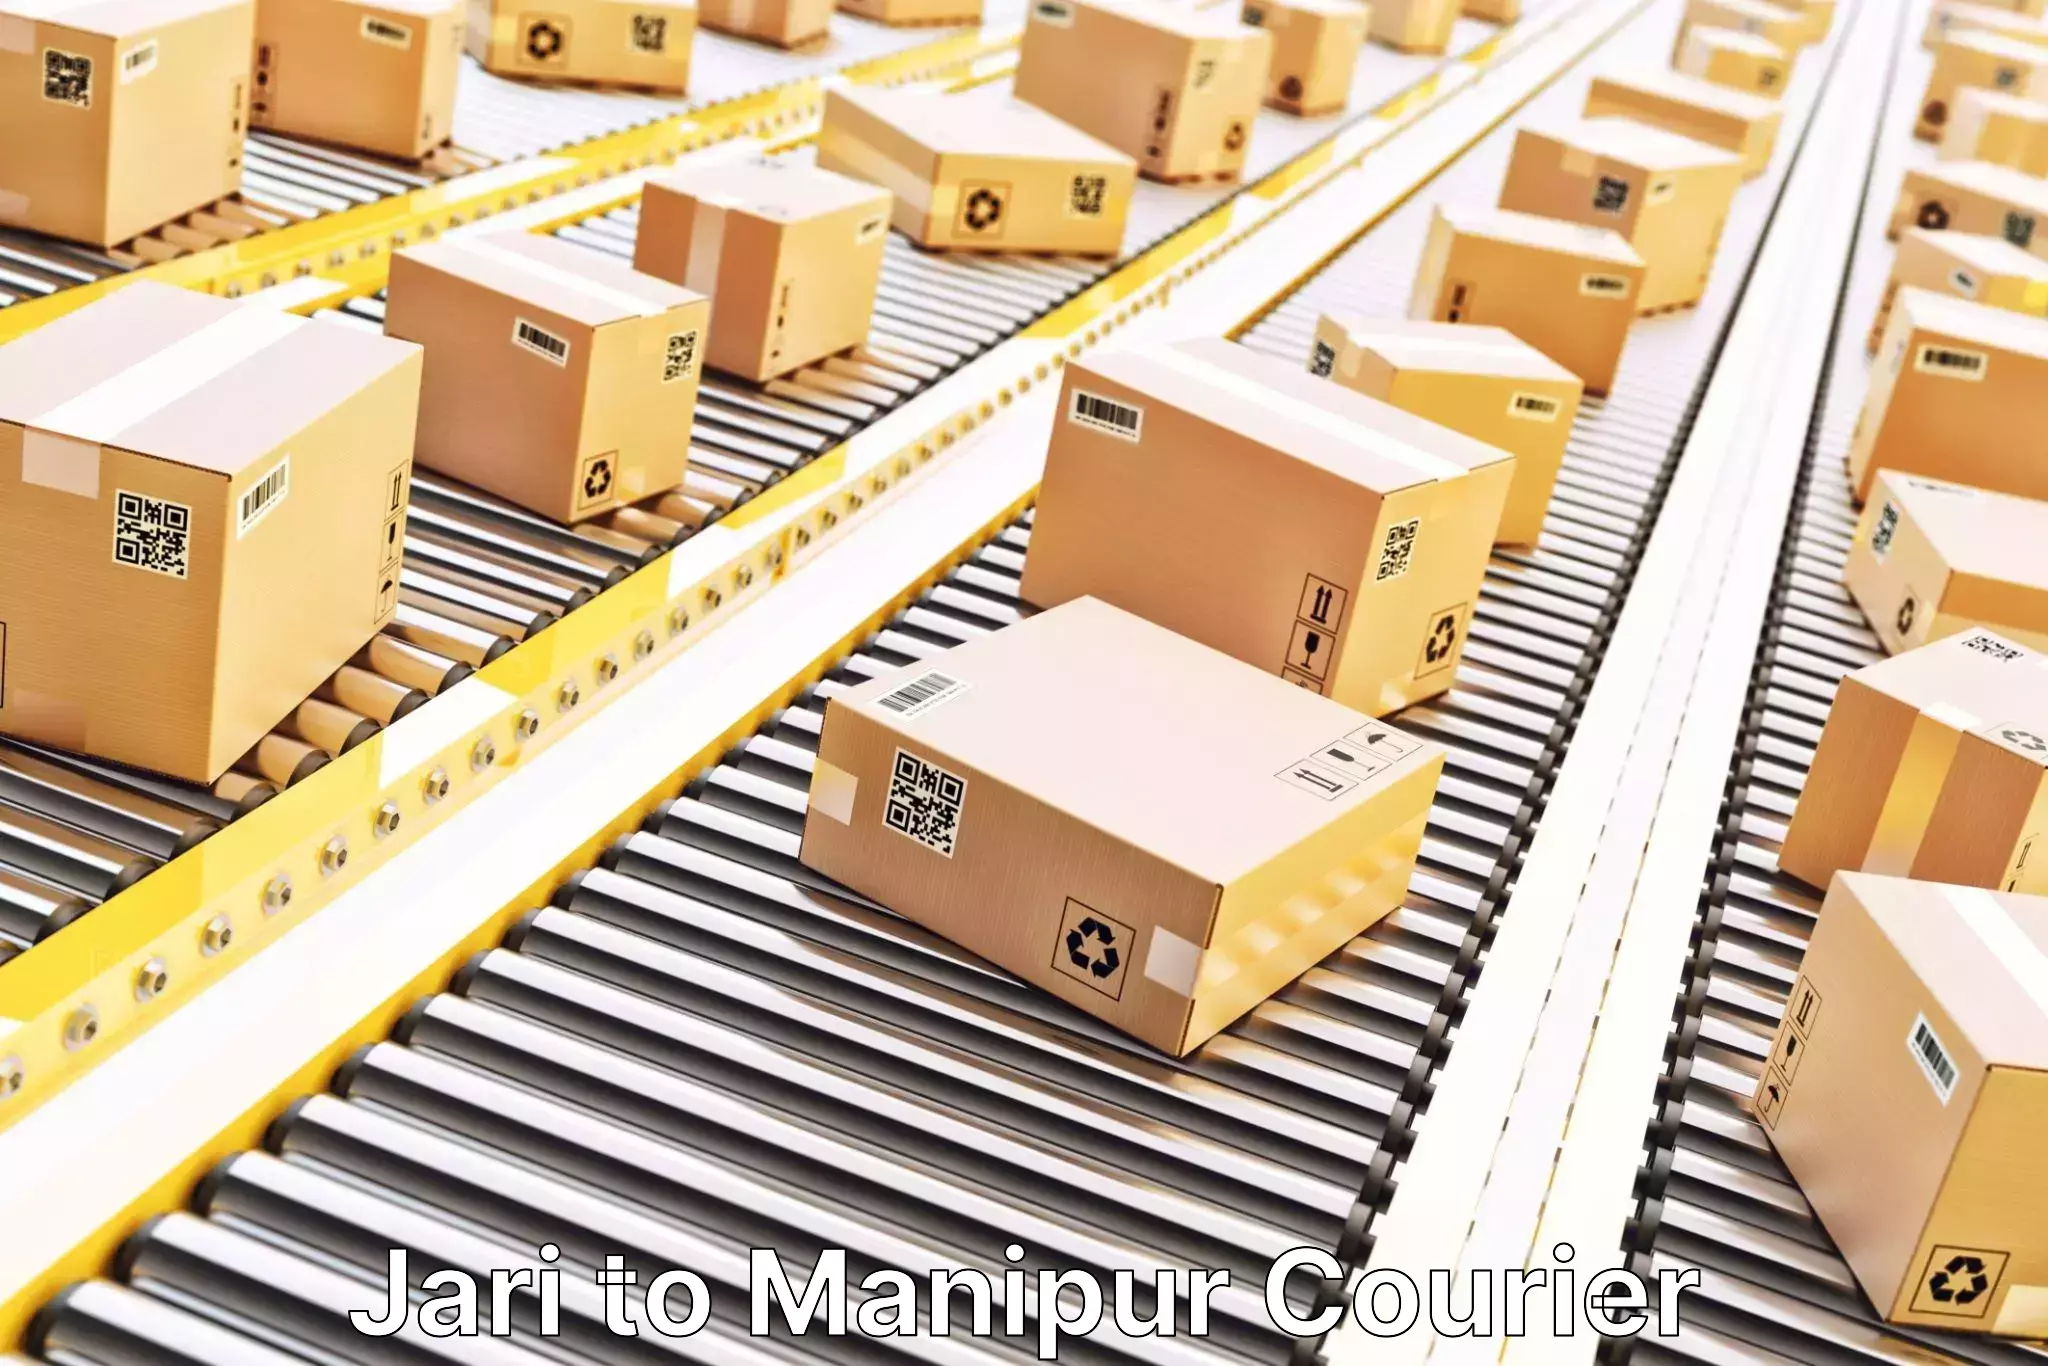 E-commerce logistics support Jari to Kanti